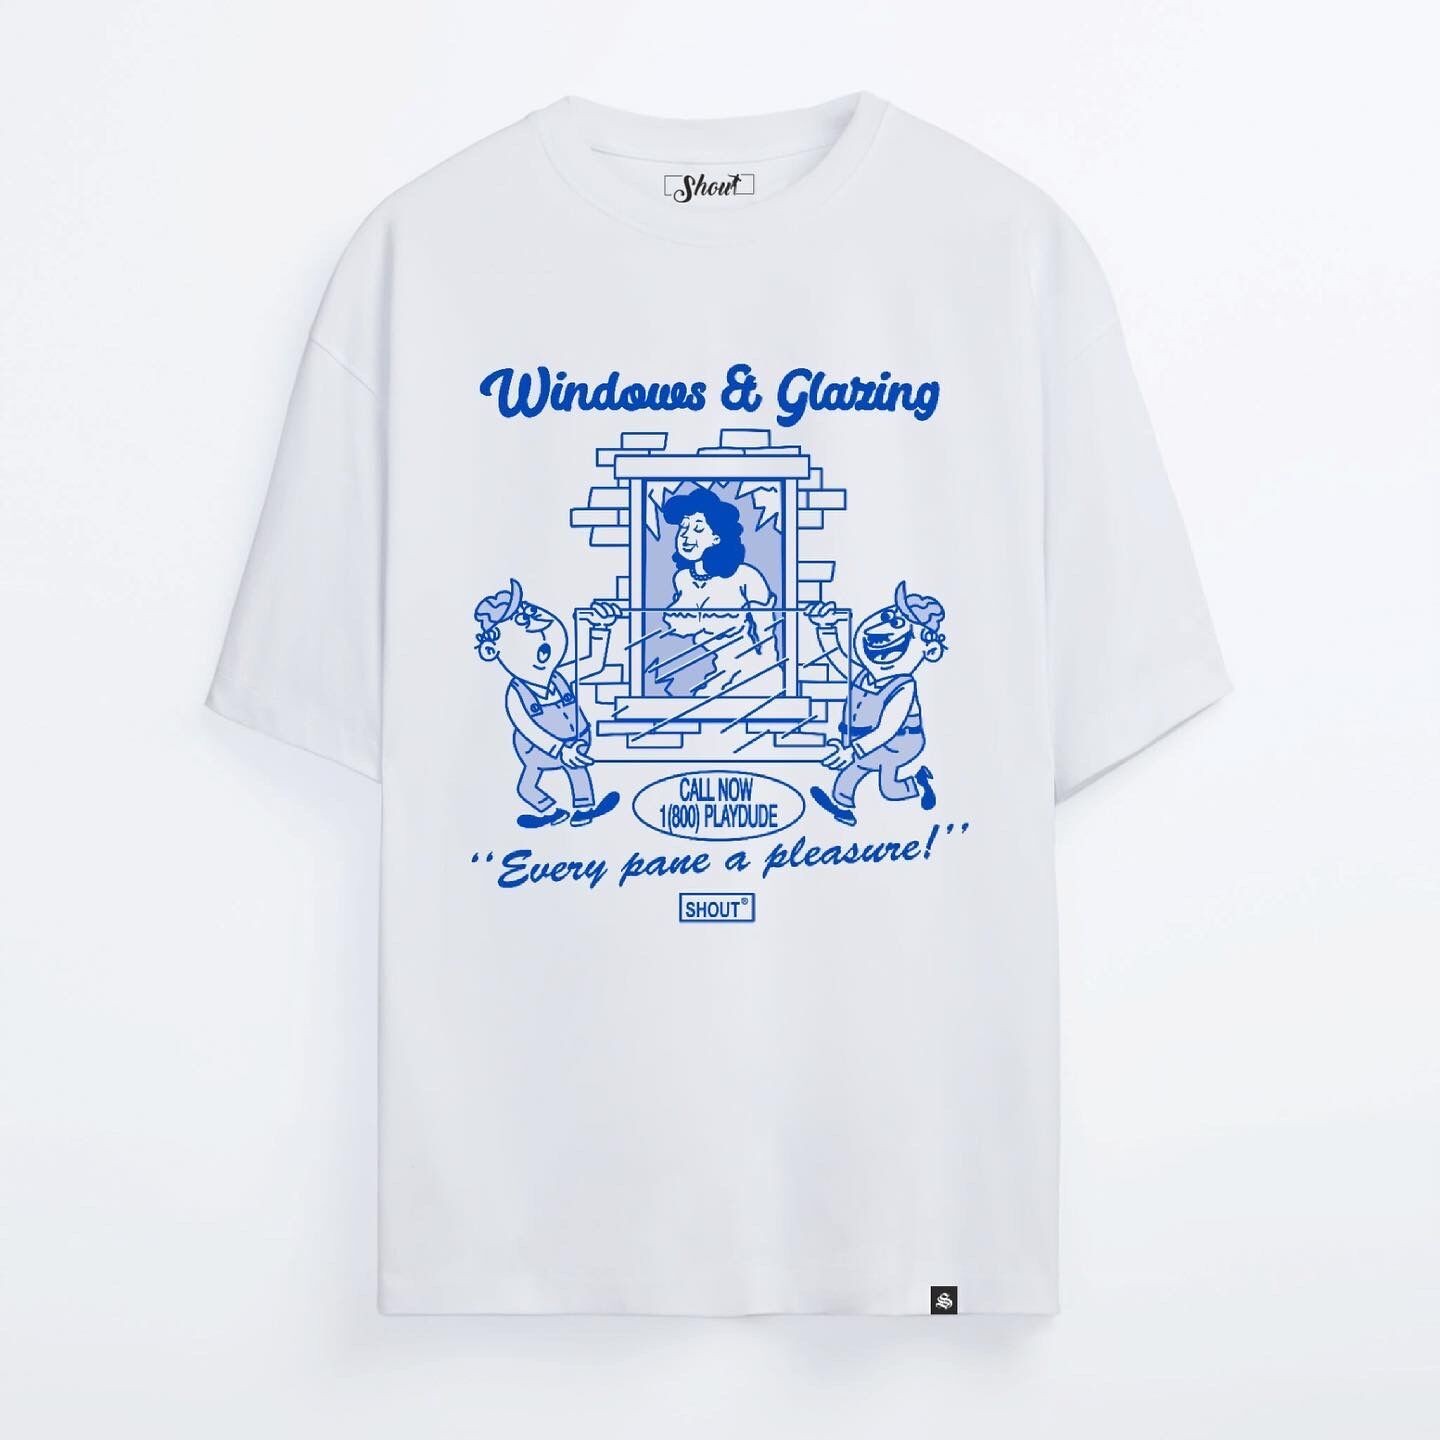 Shout Oversize Windows & Glaring Oldschool Unisex T-Shirt